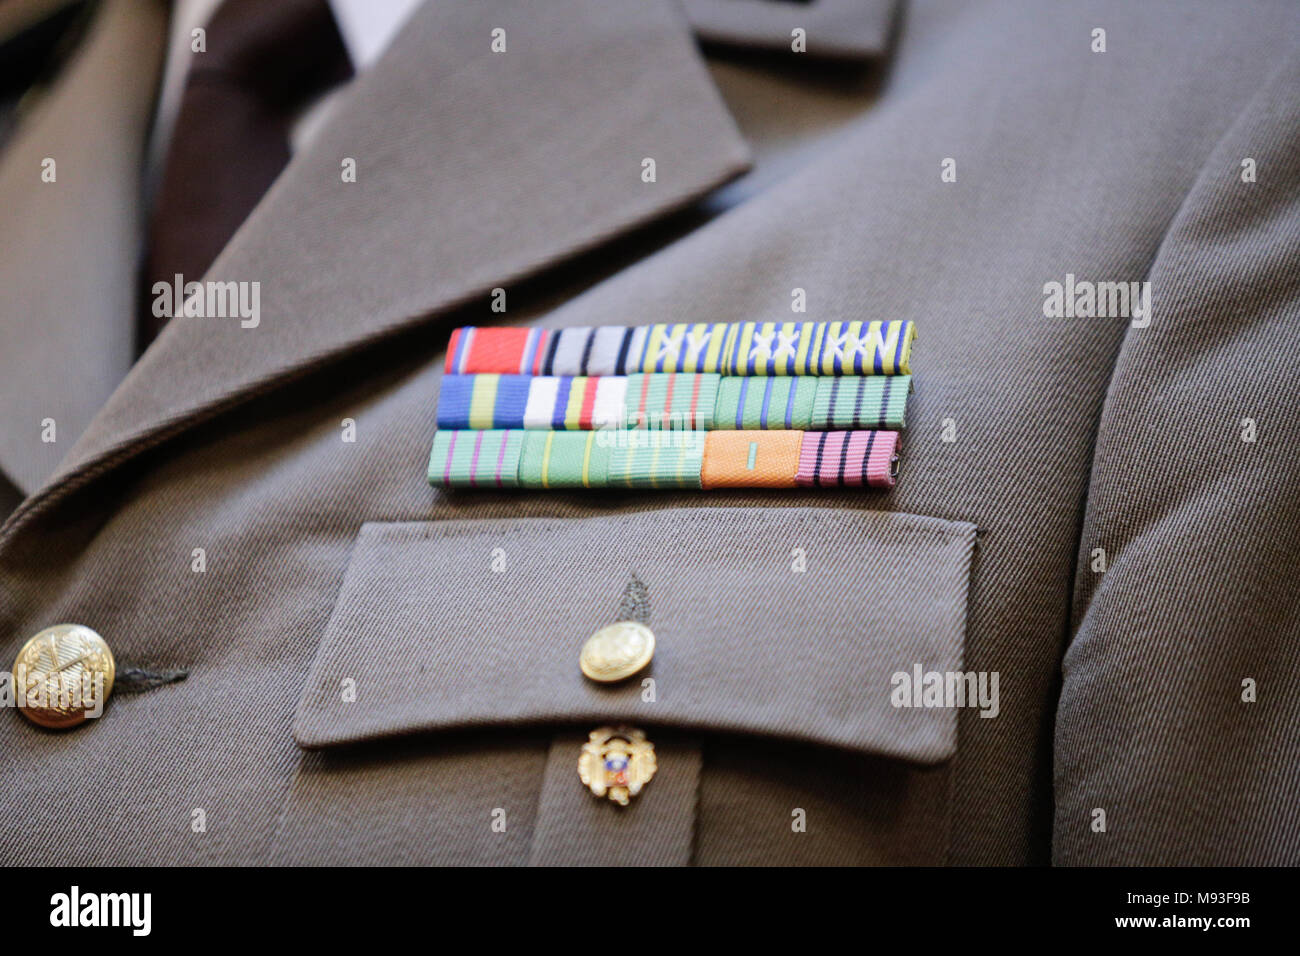 Militärische Abzeichen auf der Uniform eines rumänischen Armee Offizier Stockfoto